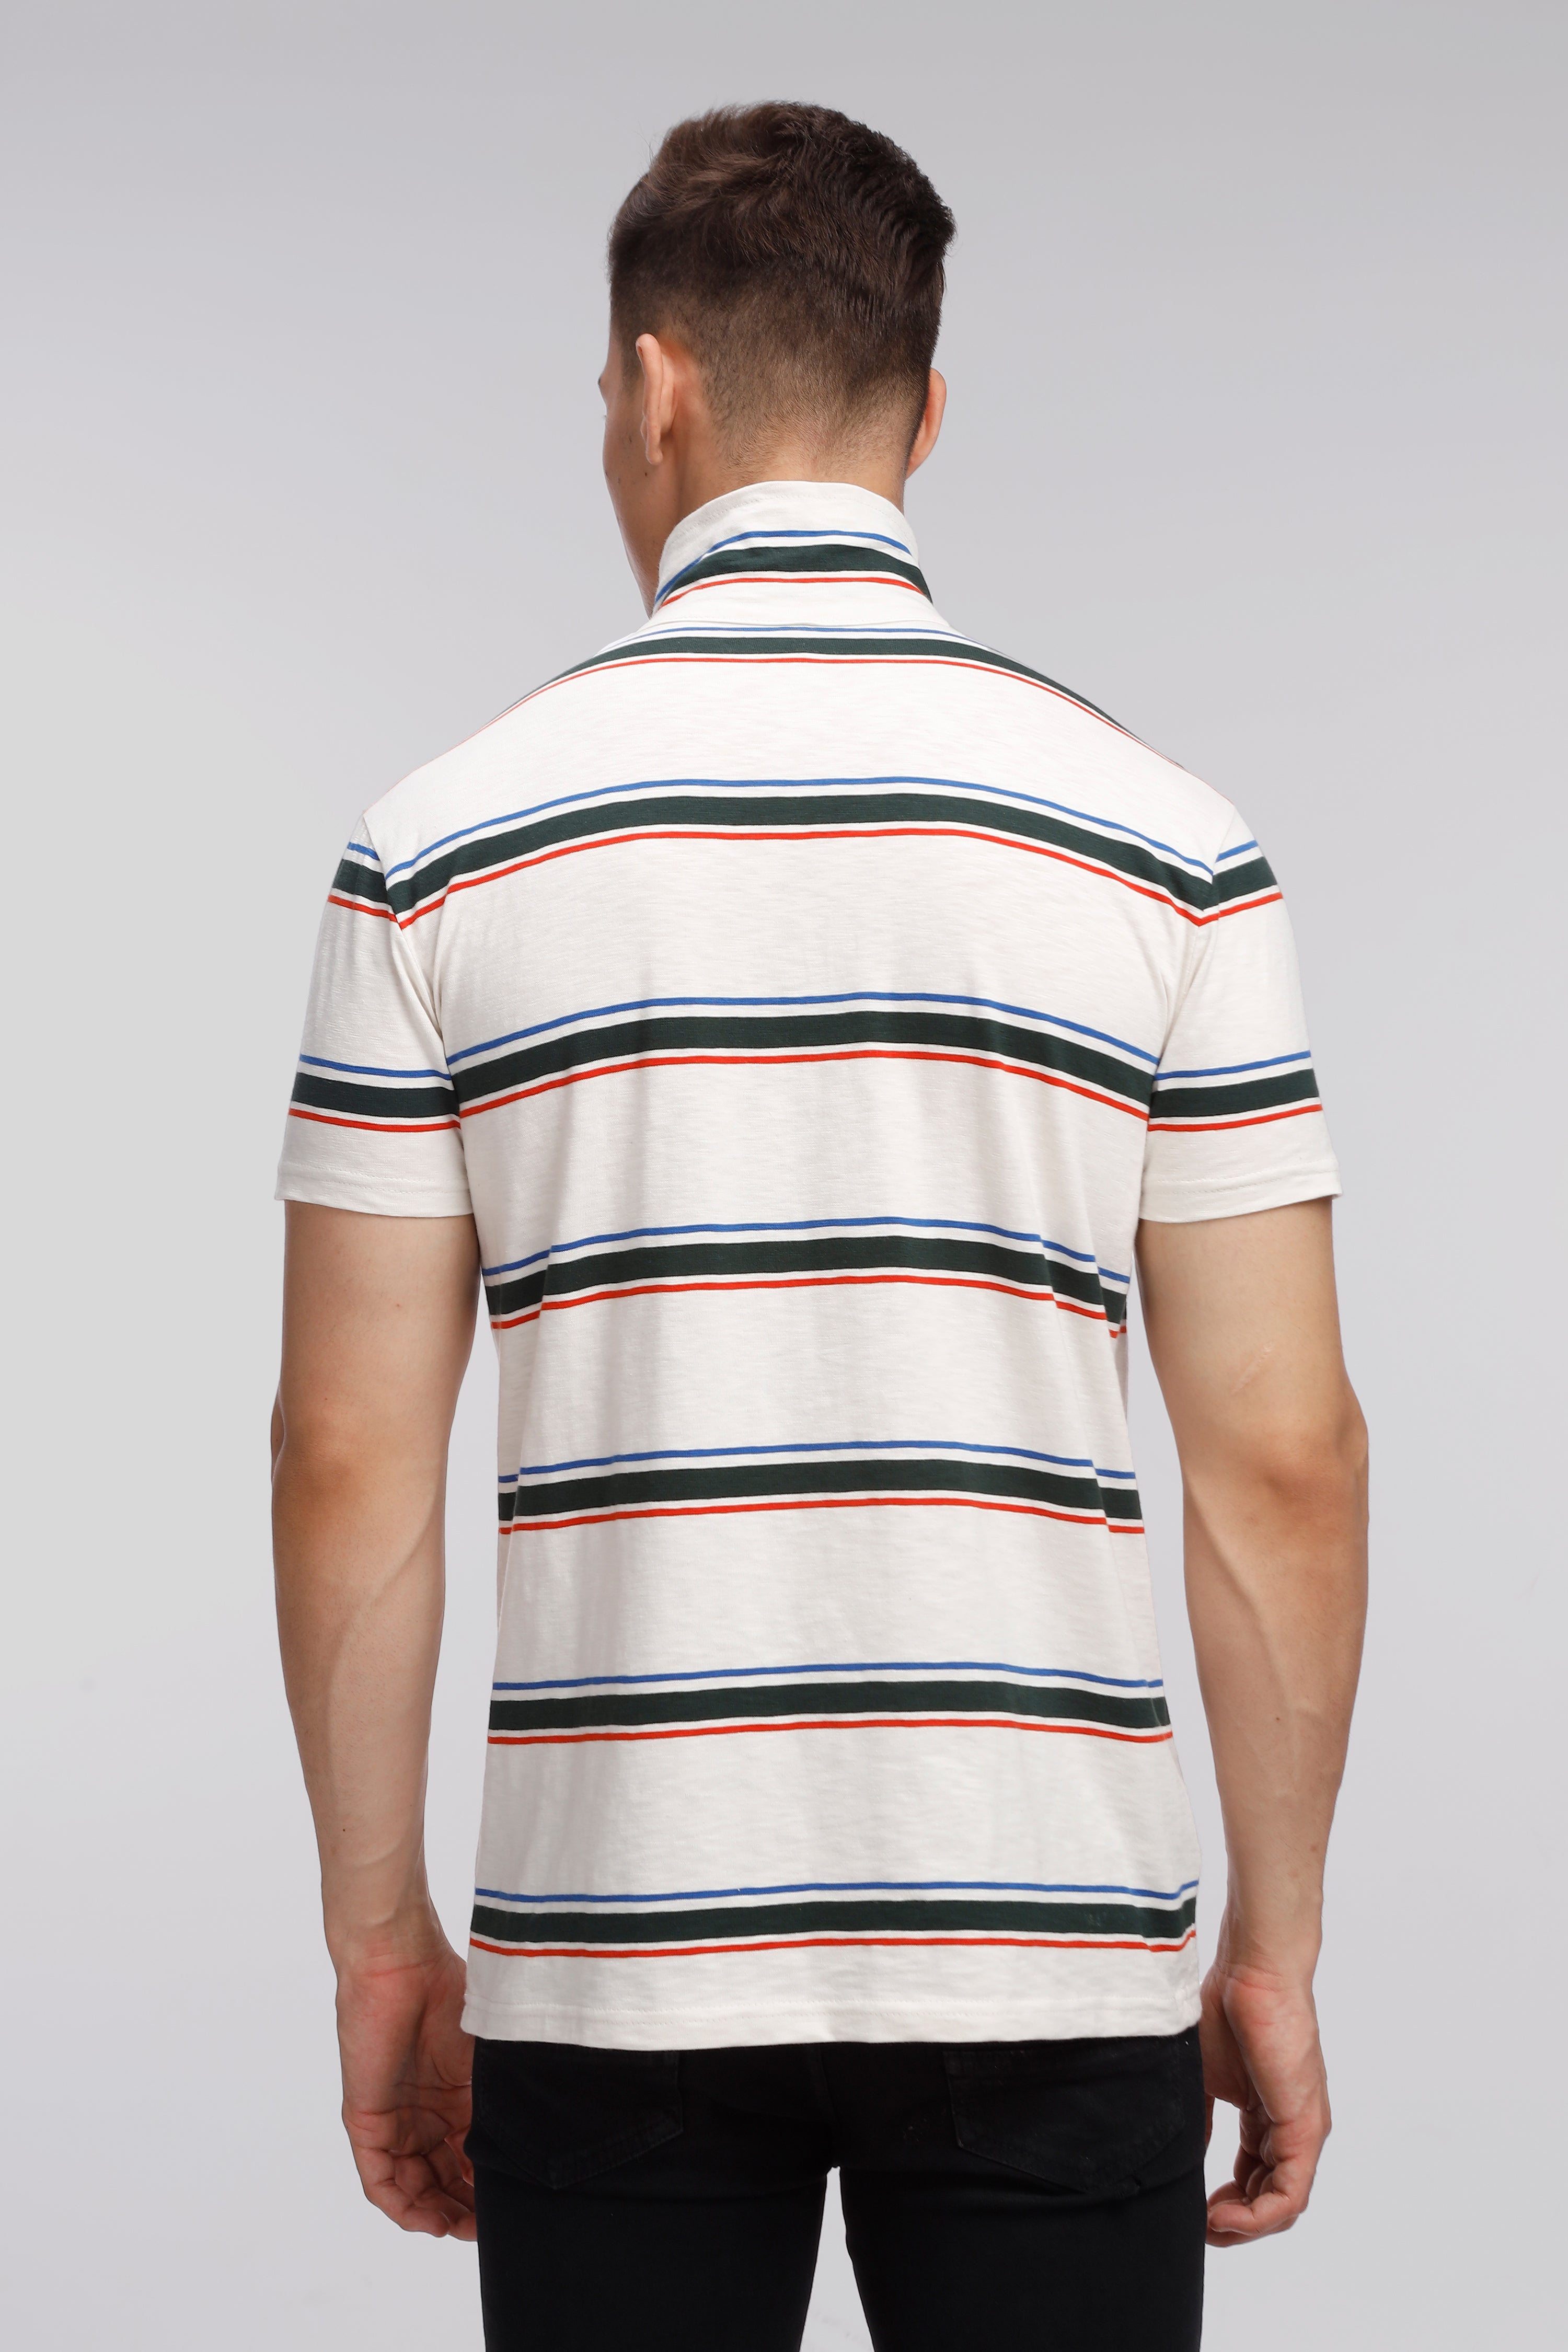 White Striper Self Design Zipper T-Shirt